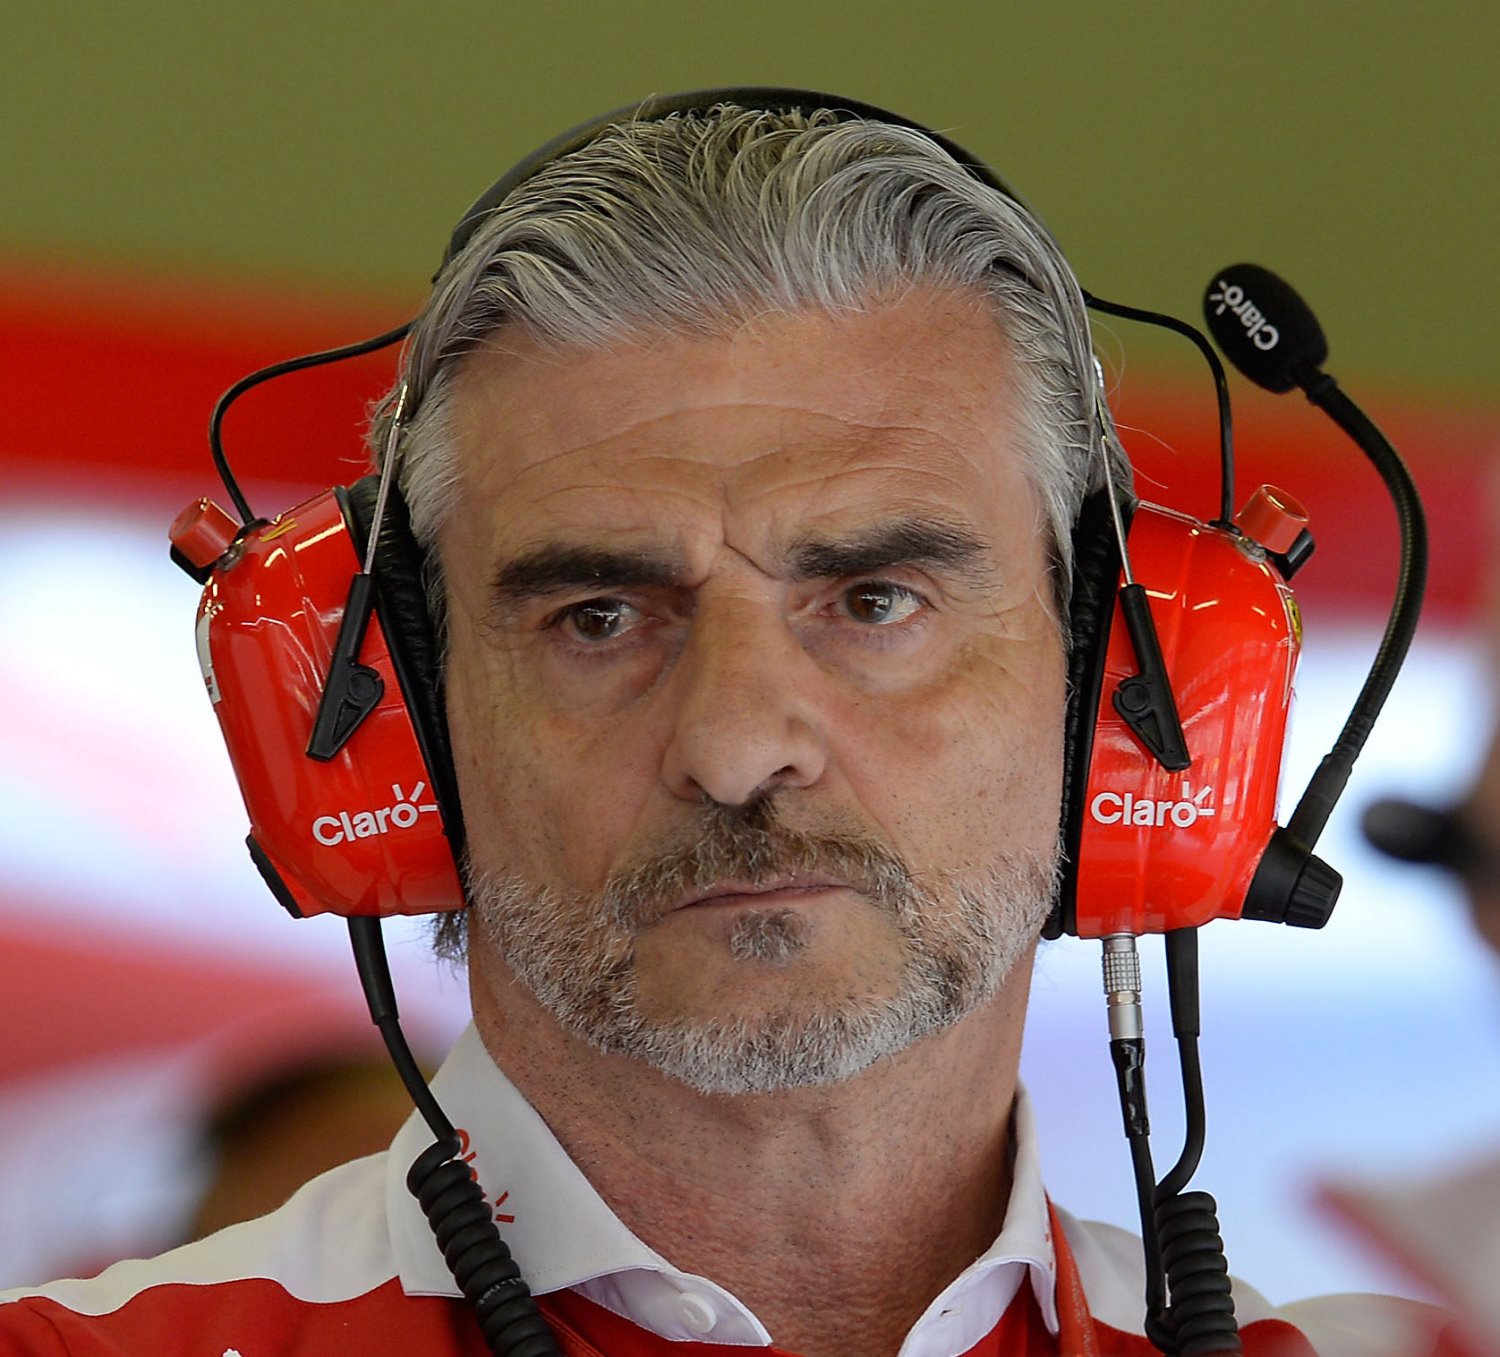 Arrivabene's hapless Ferrari team embarrassed that a Honda has more power than a Ferrari